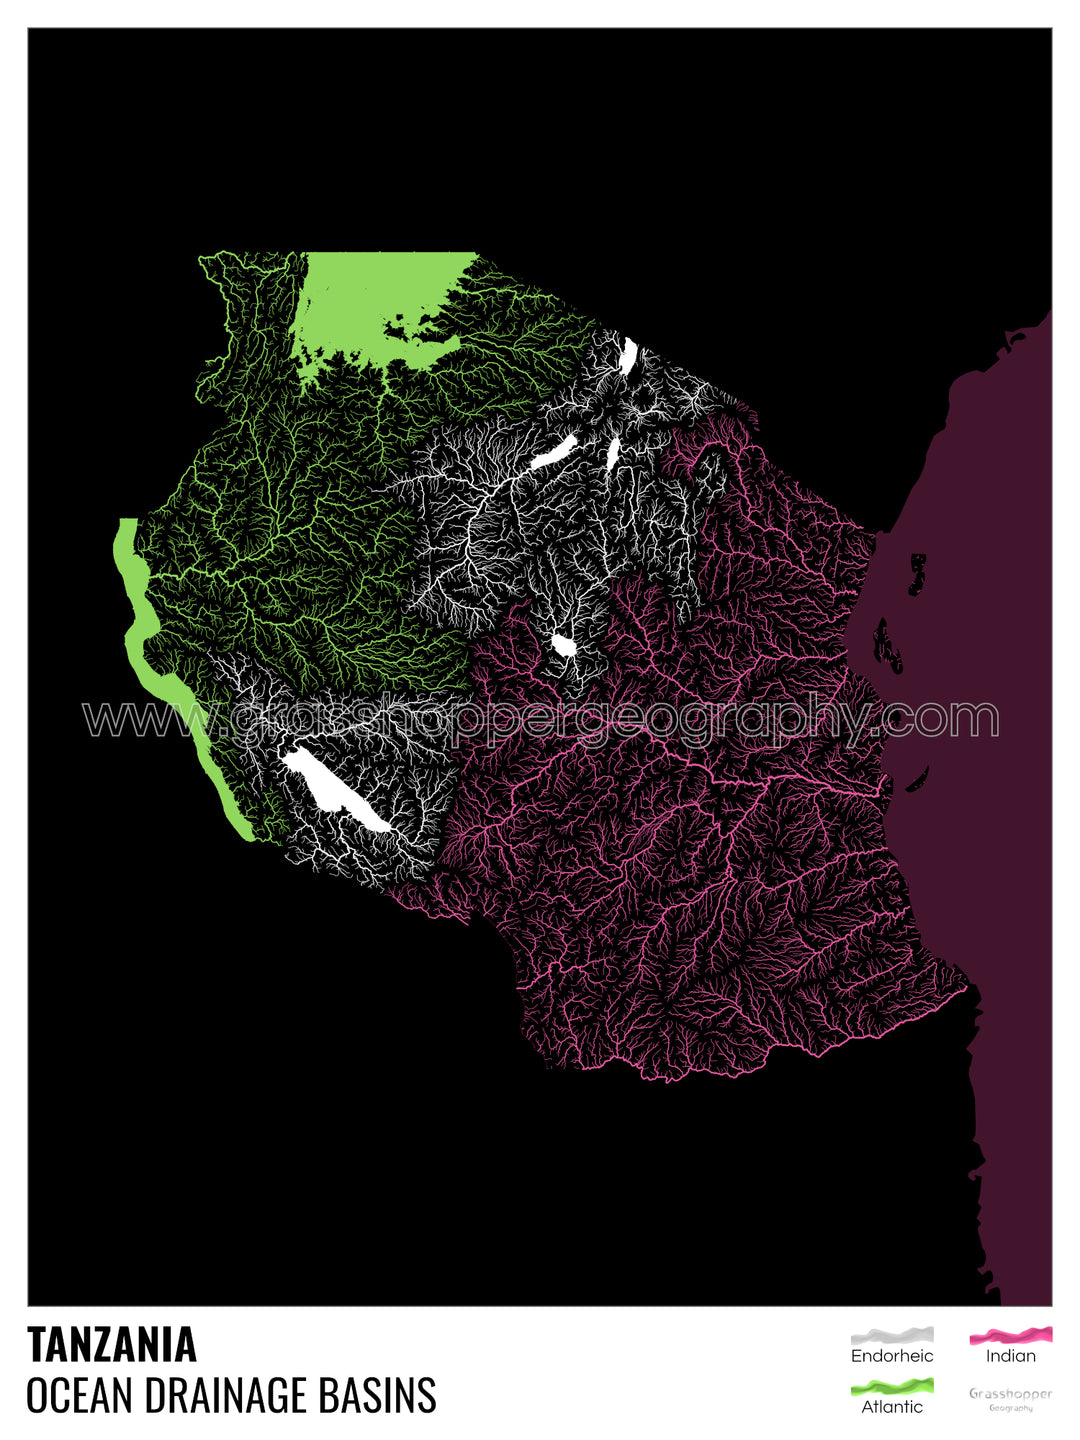 Tanzanie - Carte du bassin versant océanique, noire avec légende v2 - Impression encadrée